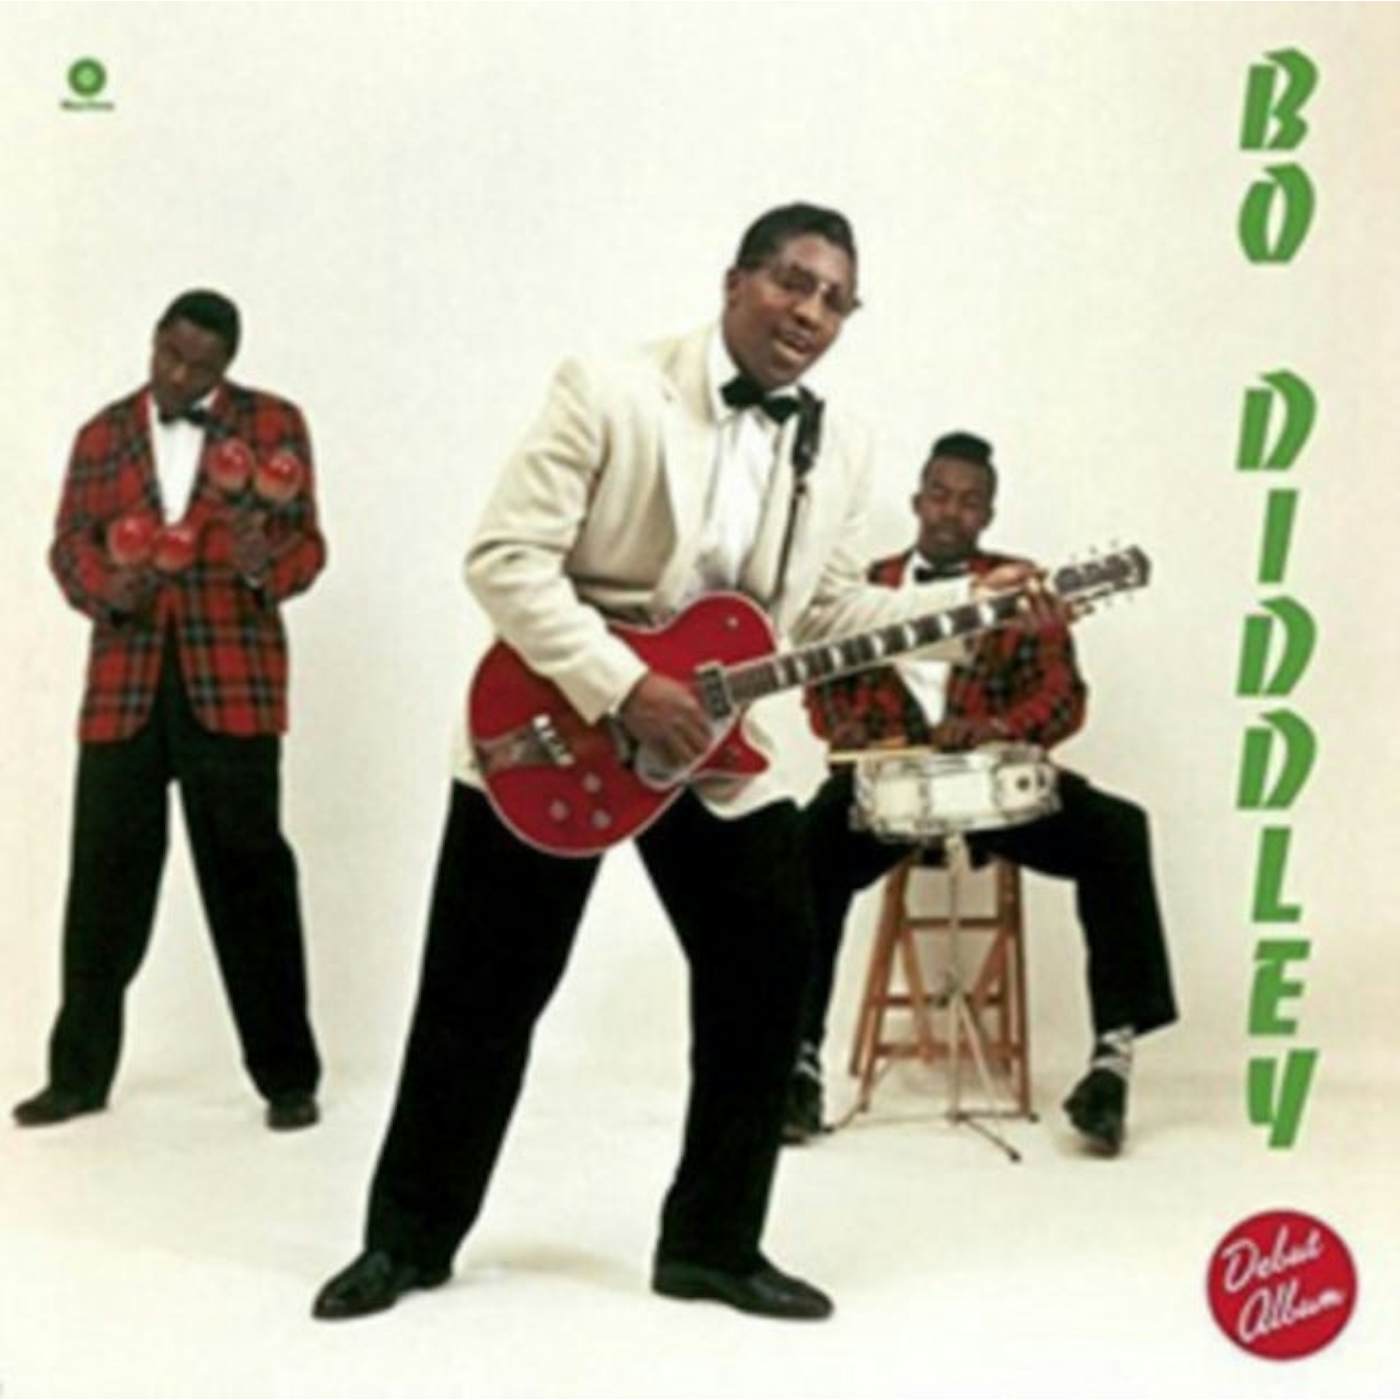 Bo Diddley LP Vinyl Record - Bo Diddley